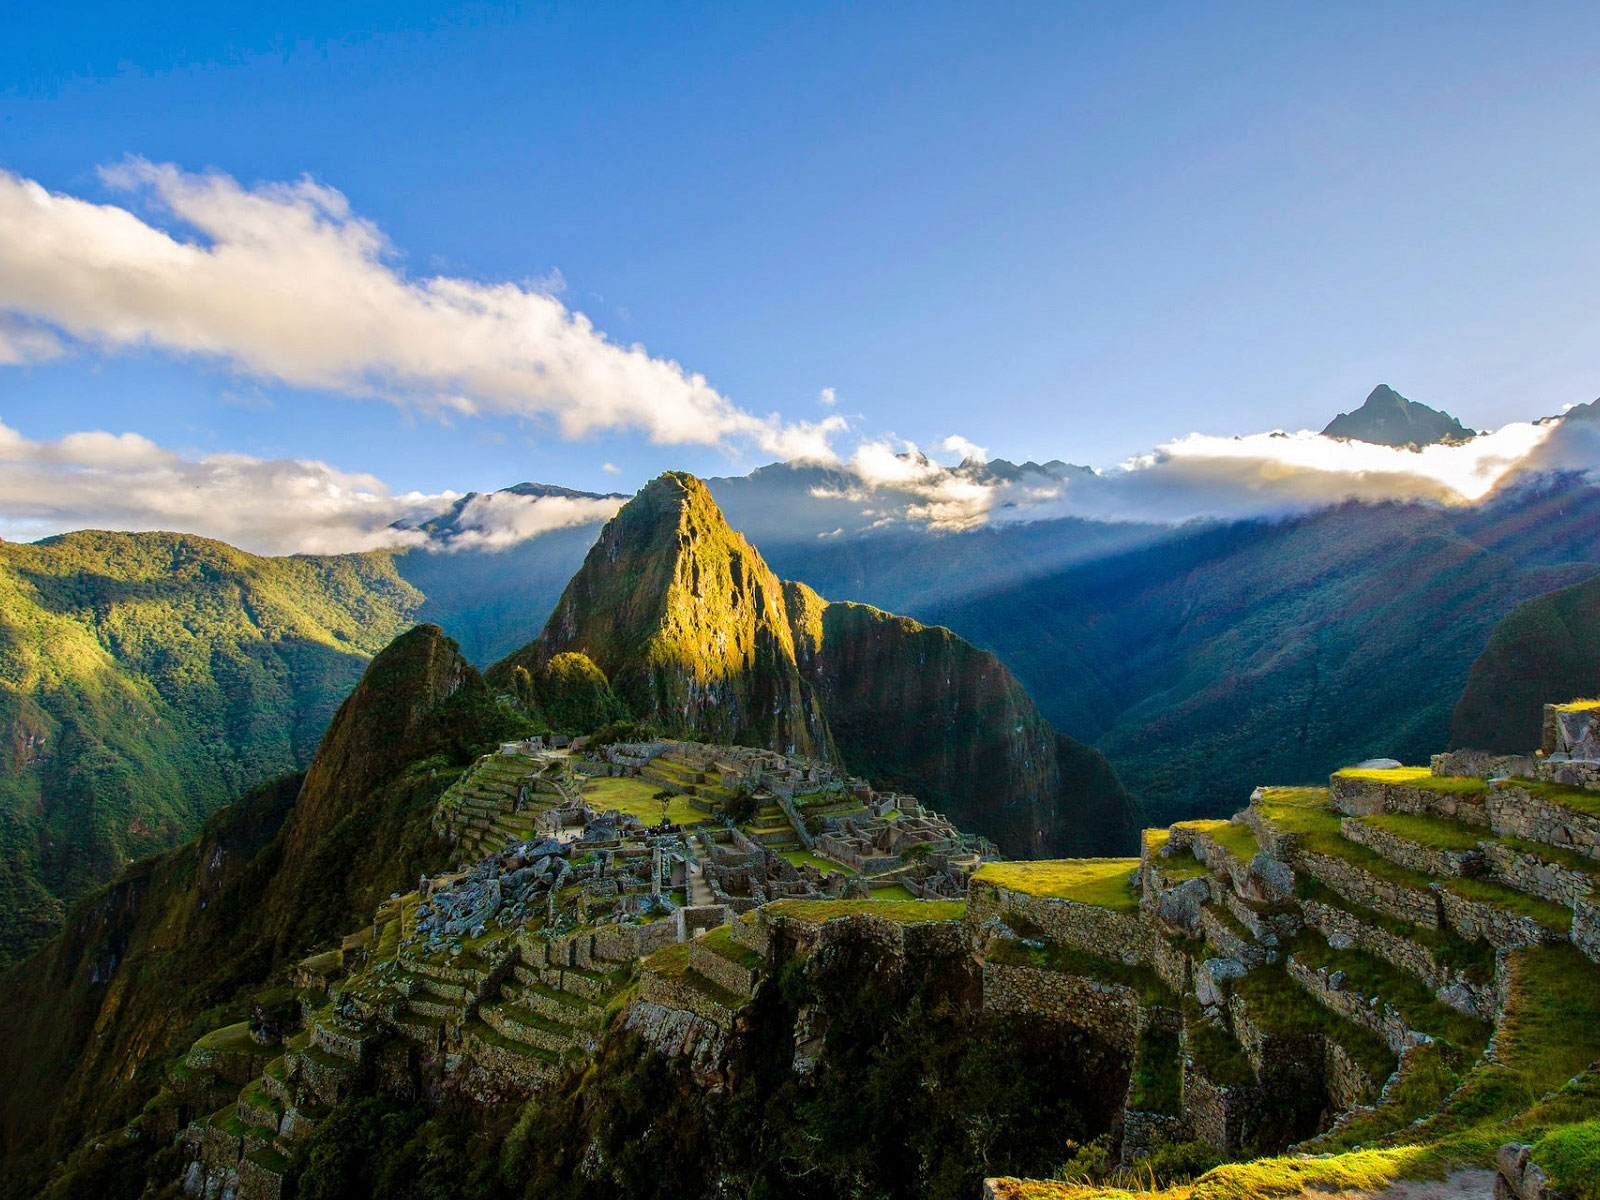 Pérou, le Machu Picchu 2430 mètres d’altitude sanctuaire de l'Empire inca